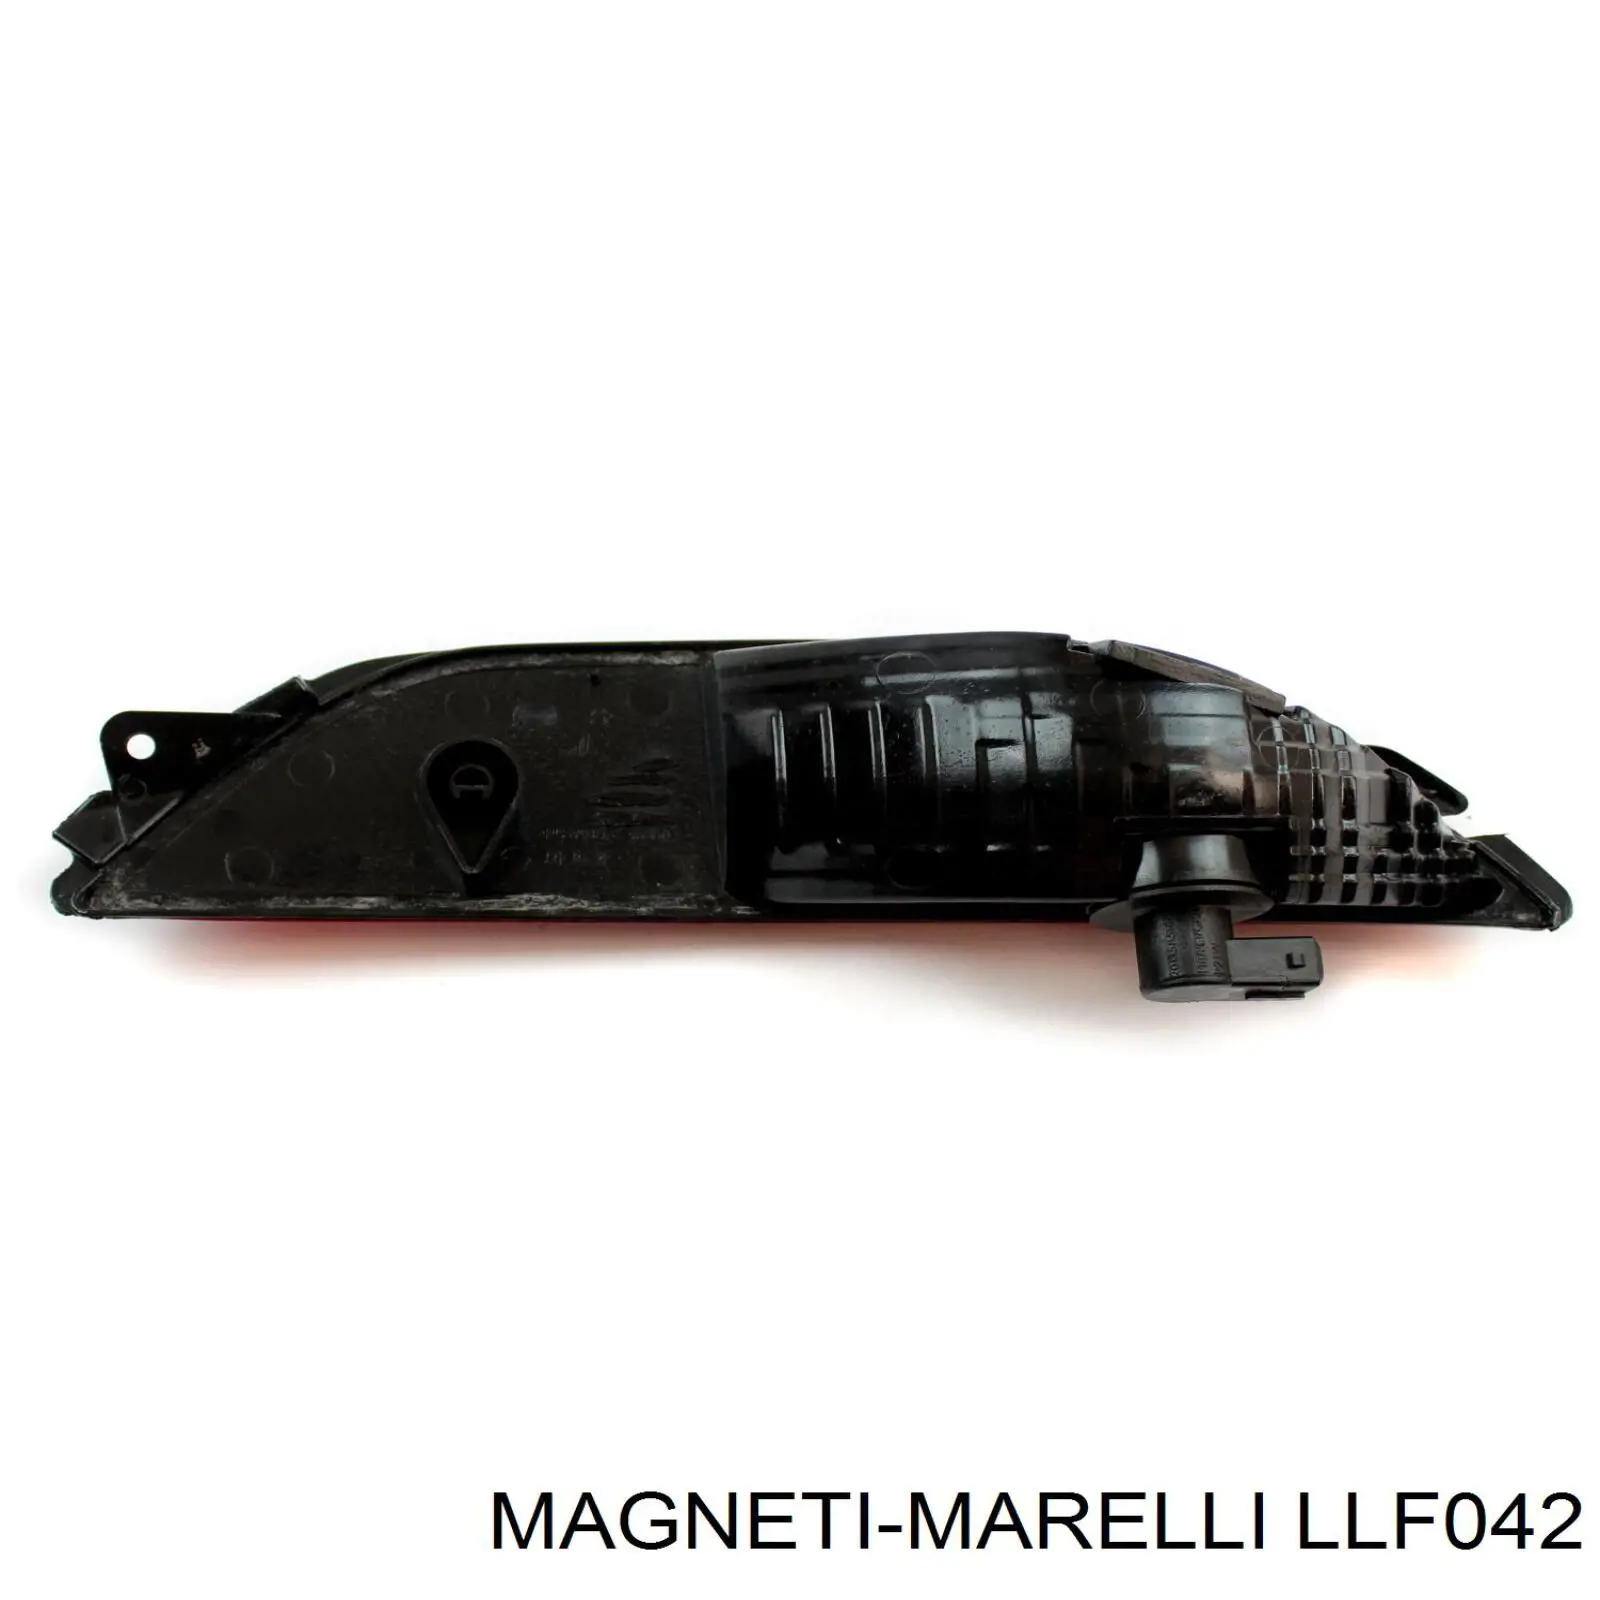 LLF042 Magneti Marelli piloto parachoques trasero izquierdo